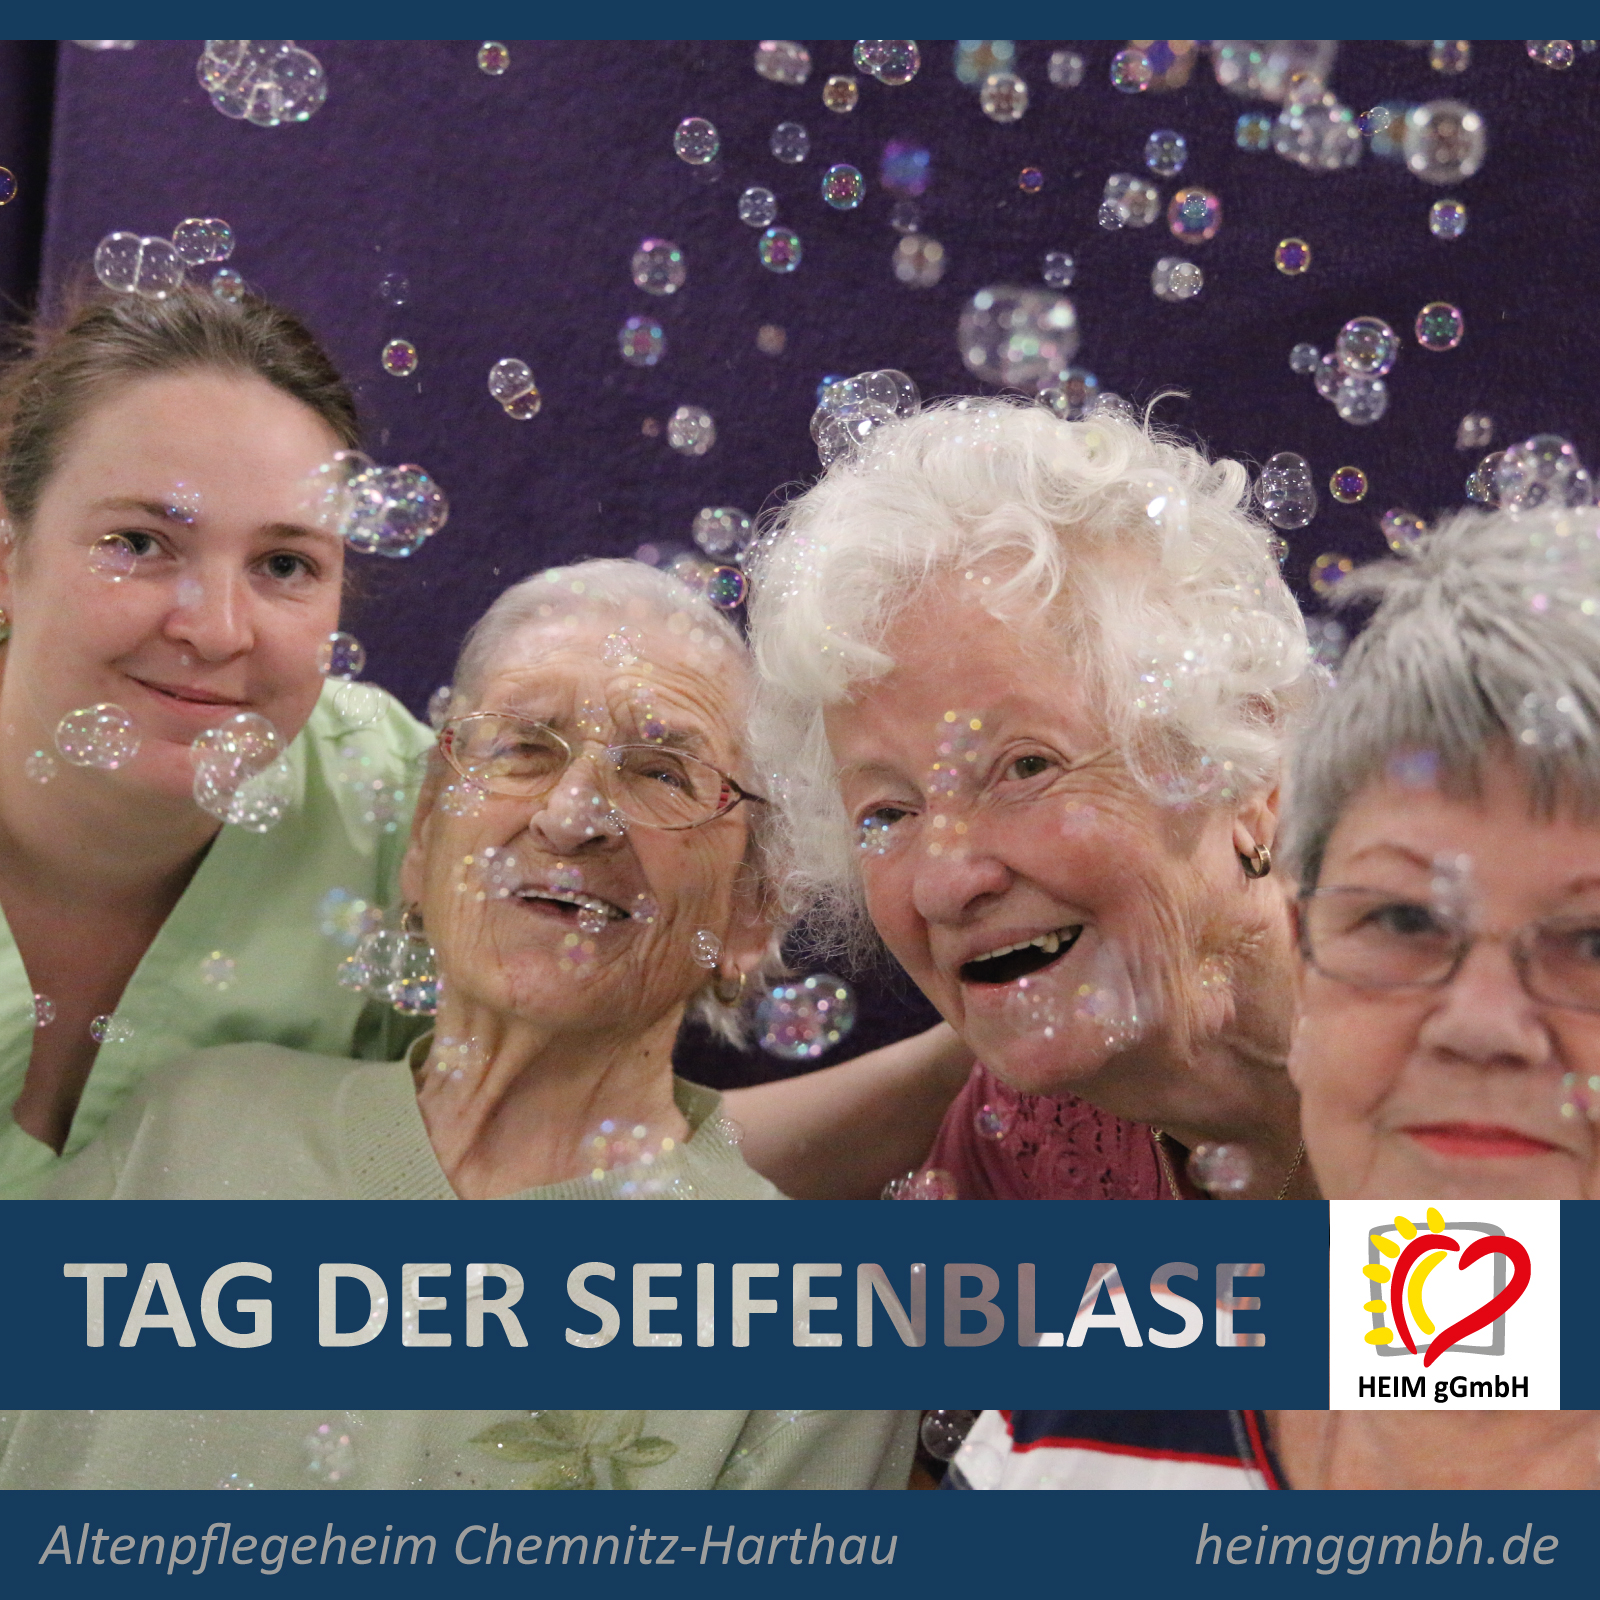 Freude und Vergänglichkeit - Tag der Seifenblase im Altenpflegeheim Chemnitz Harthau der HEIM gemeinnützigen GmbH